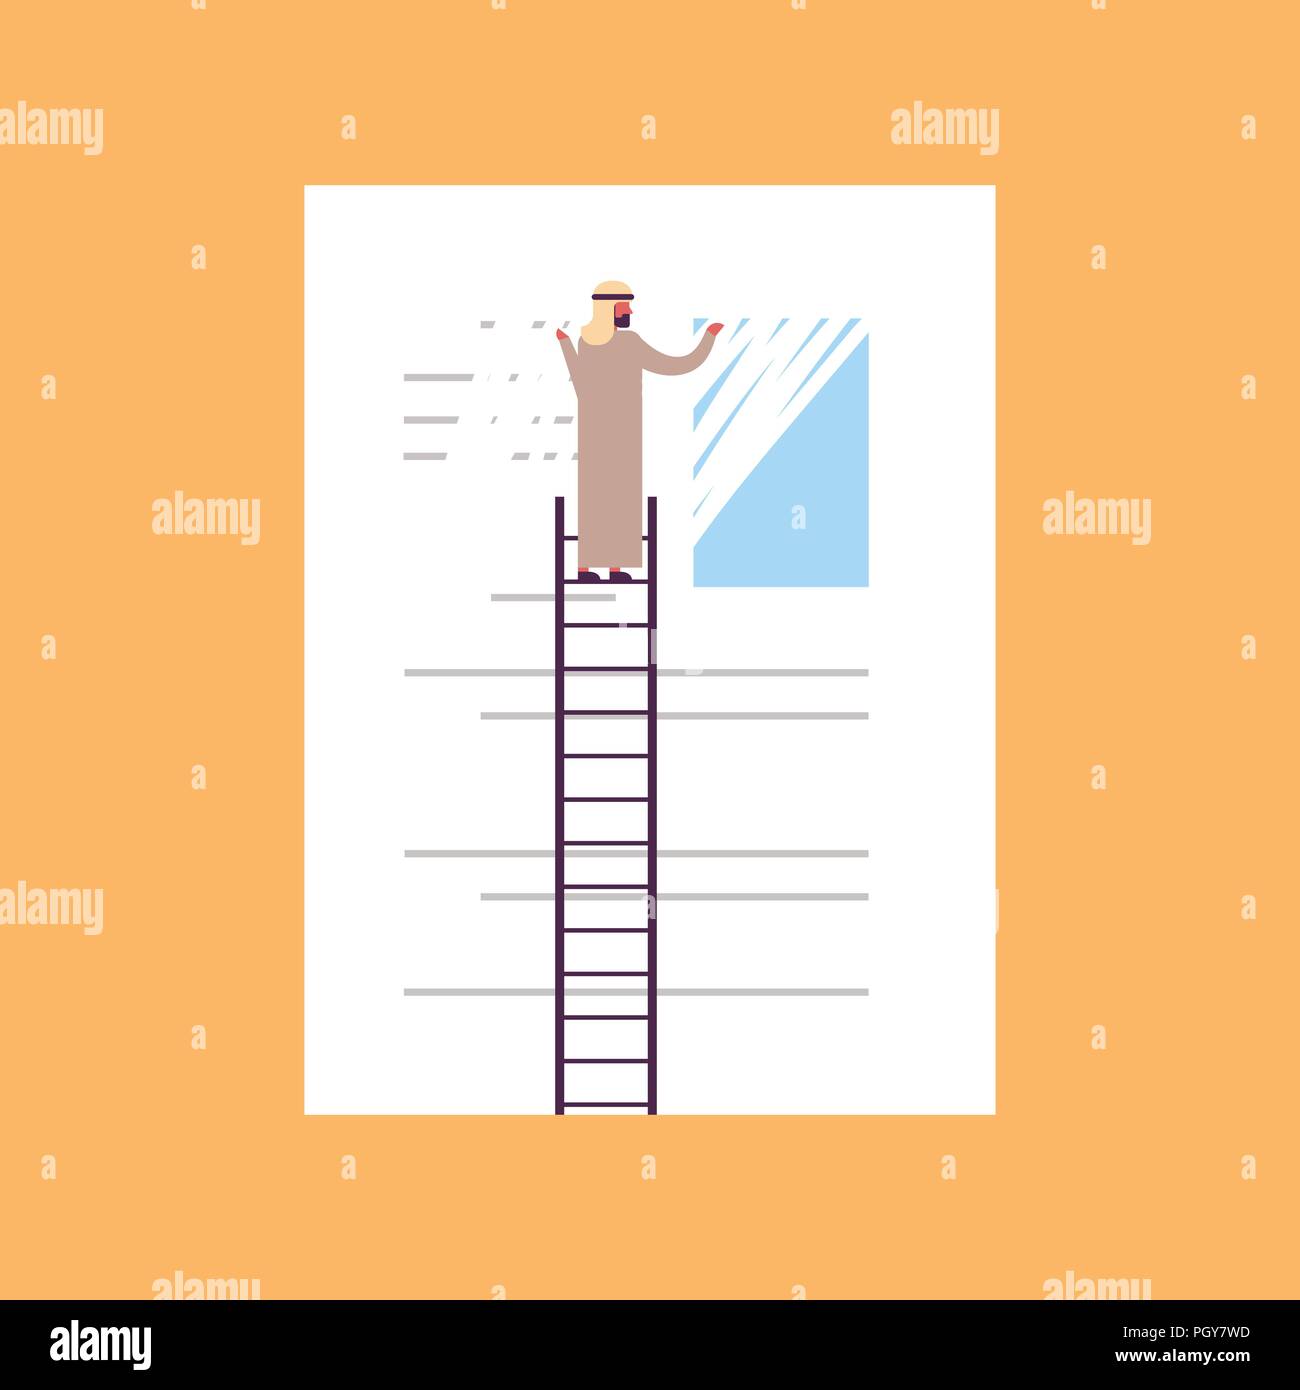 El empresario árabe borrando información borrar datos concepto hombre árabe en la escalera delate info fondo azul plana Ilustración del Vector